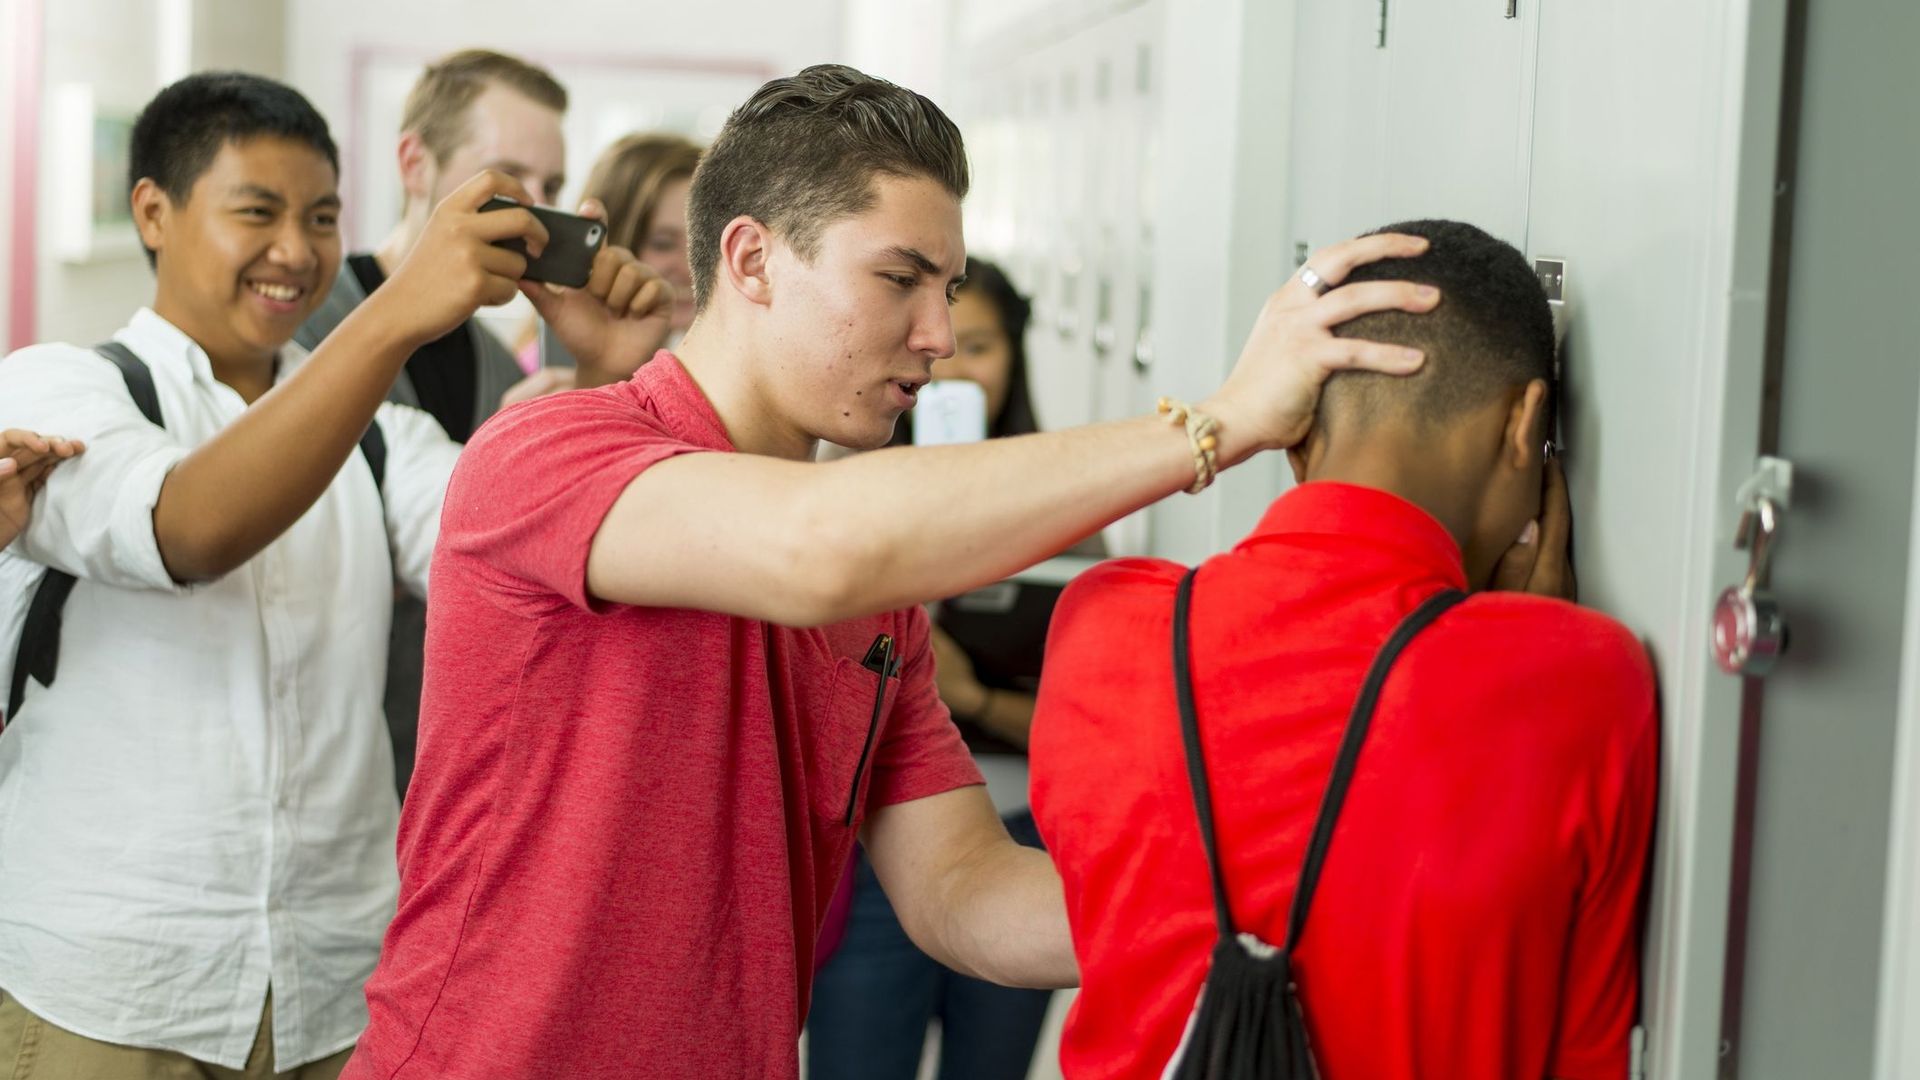 Harcèlement à l'école: les enfants "bourreaux" peuvent être sujets à des troubles mentaux.